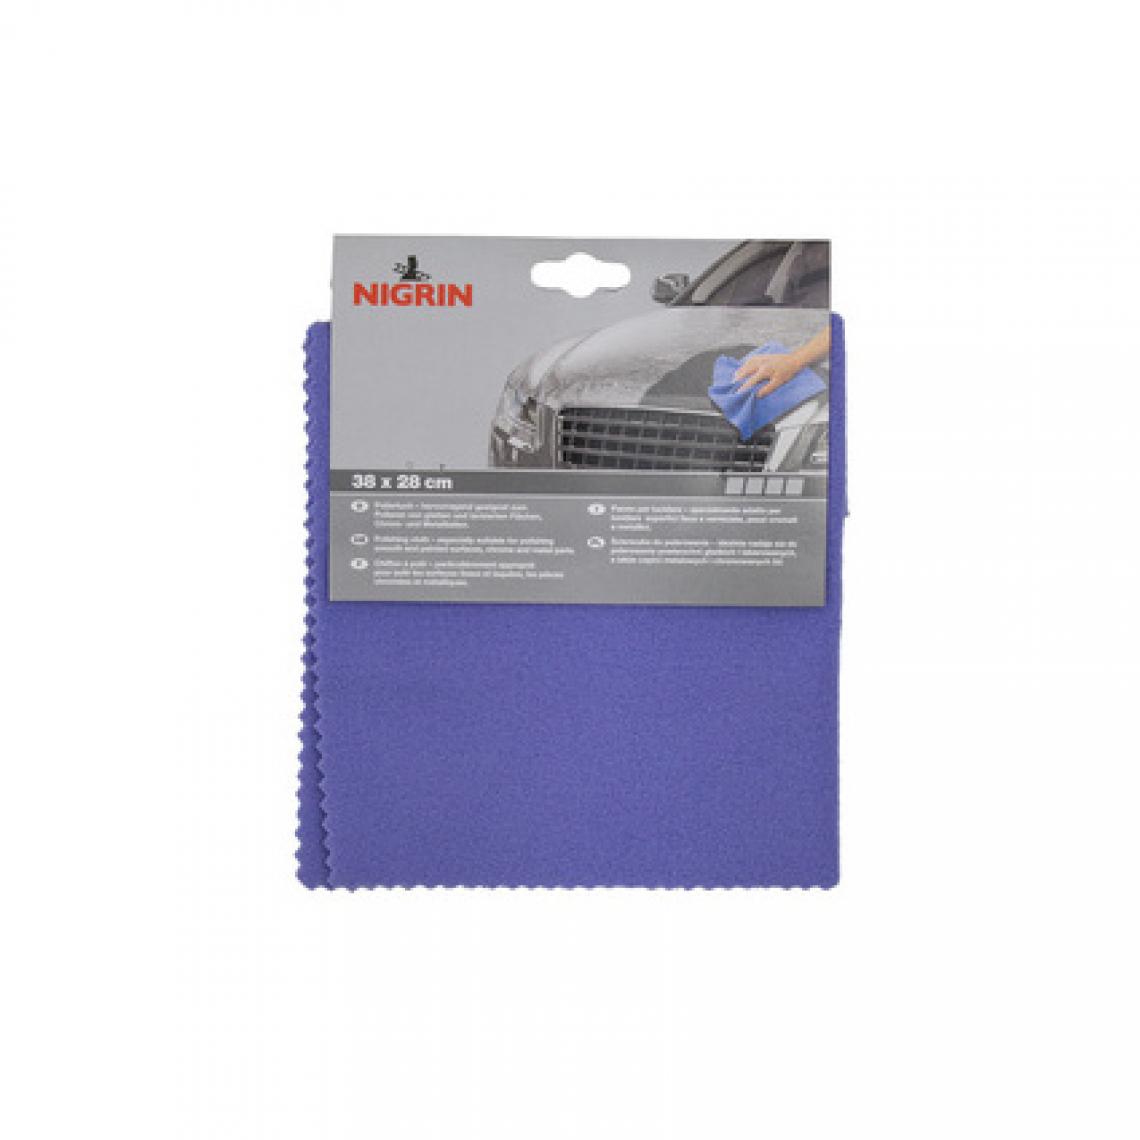 Unitec - NIGRIN Chiffon à polir, (L)380 x (H)280 mm () - Accessoires brossage et polissage